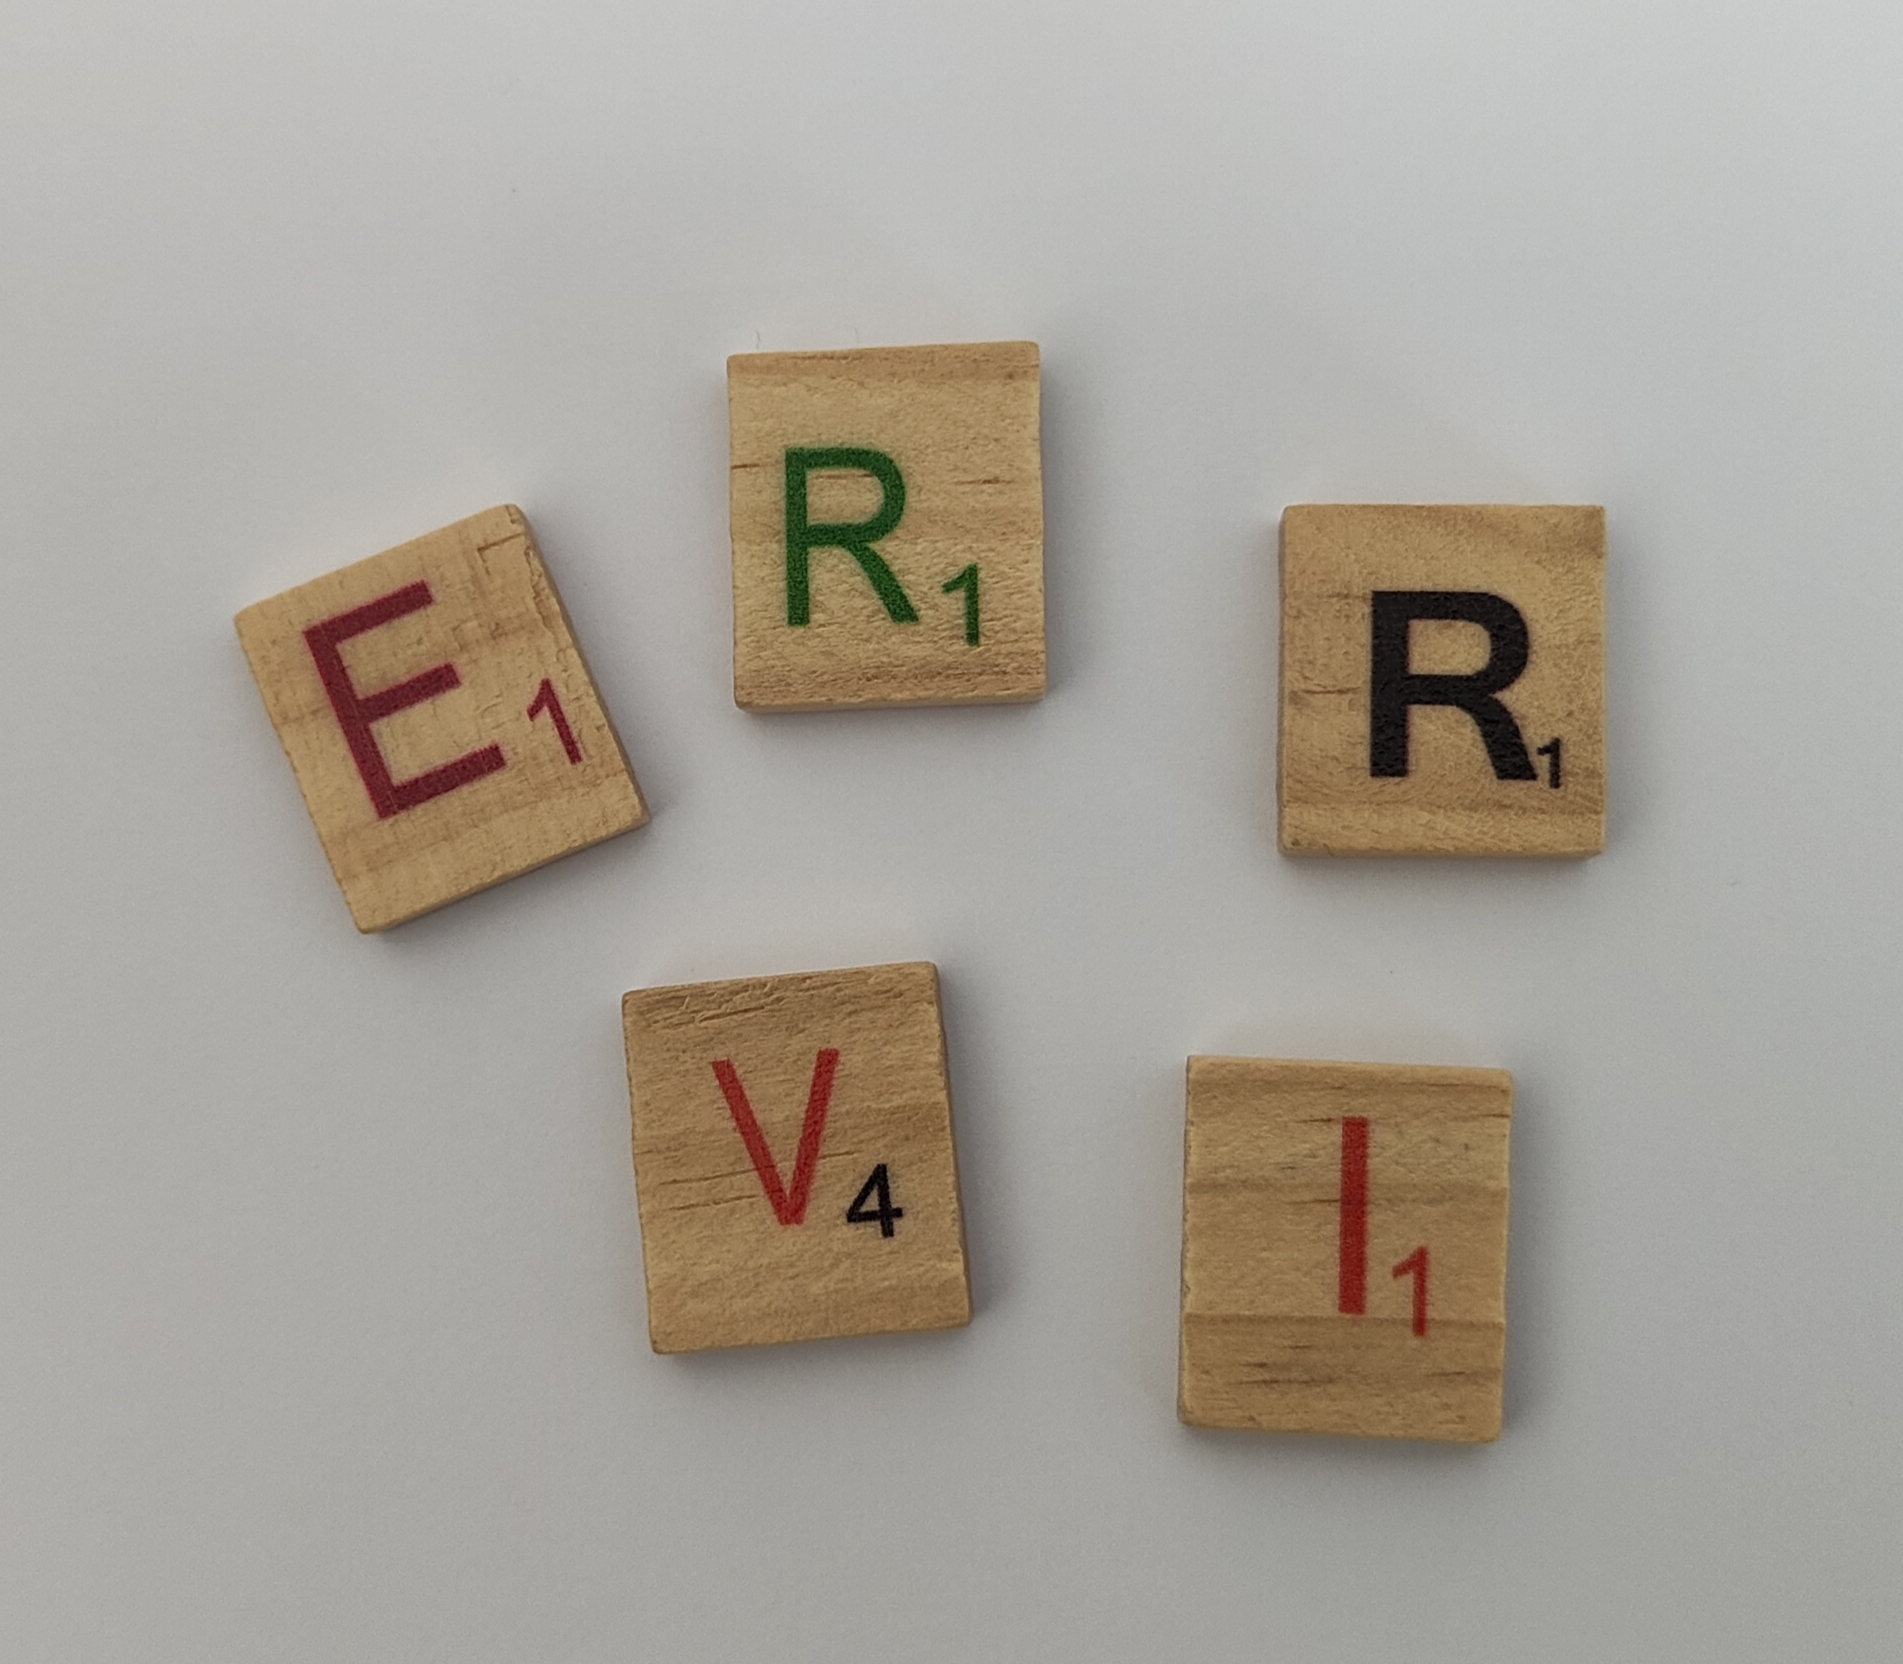 La imagen muestra las letras e r r v i